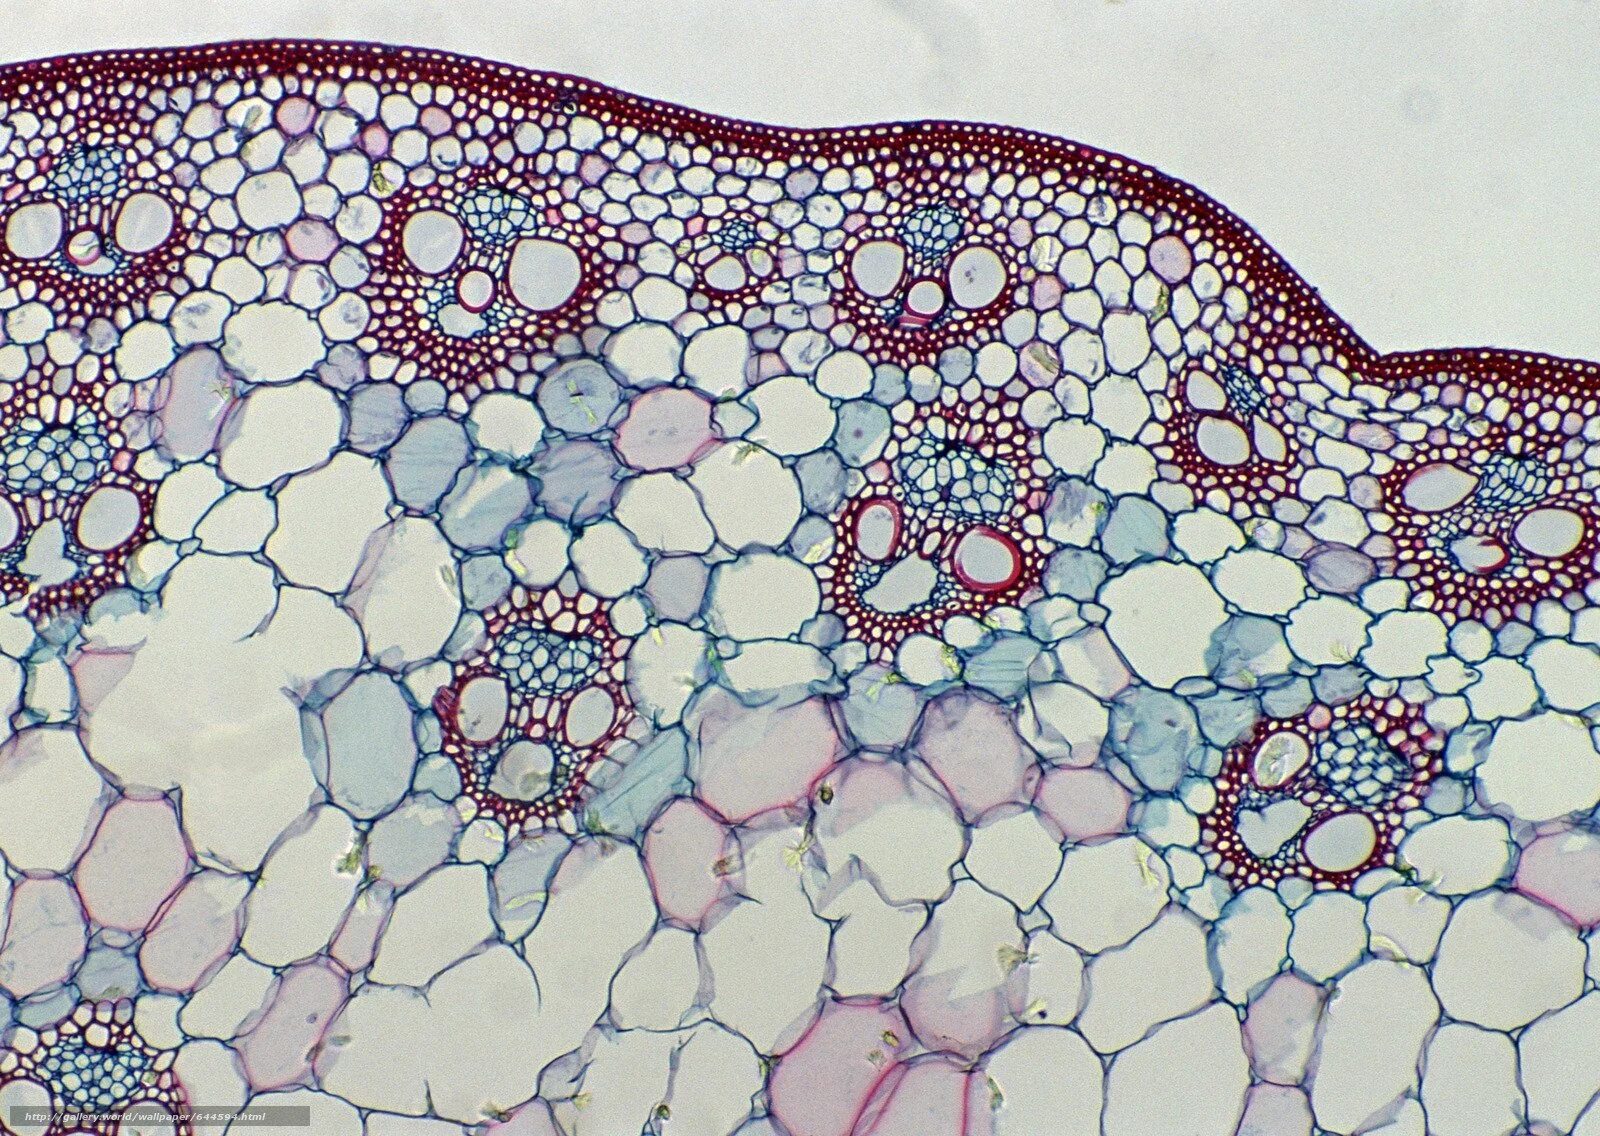 Склеренхима под микроскопом. Ксилема микроскоп. Микроскопия клетки. Клетка в микроскопе.